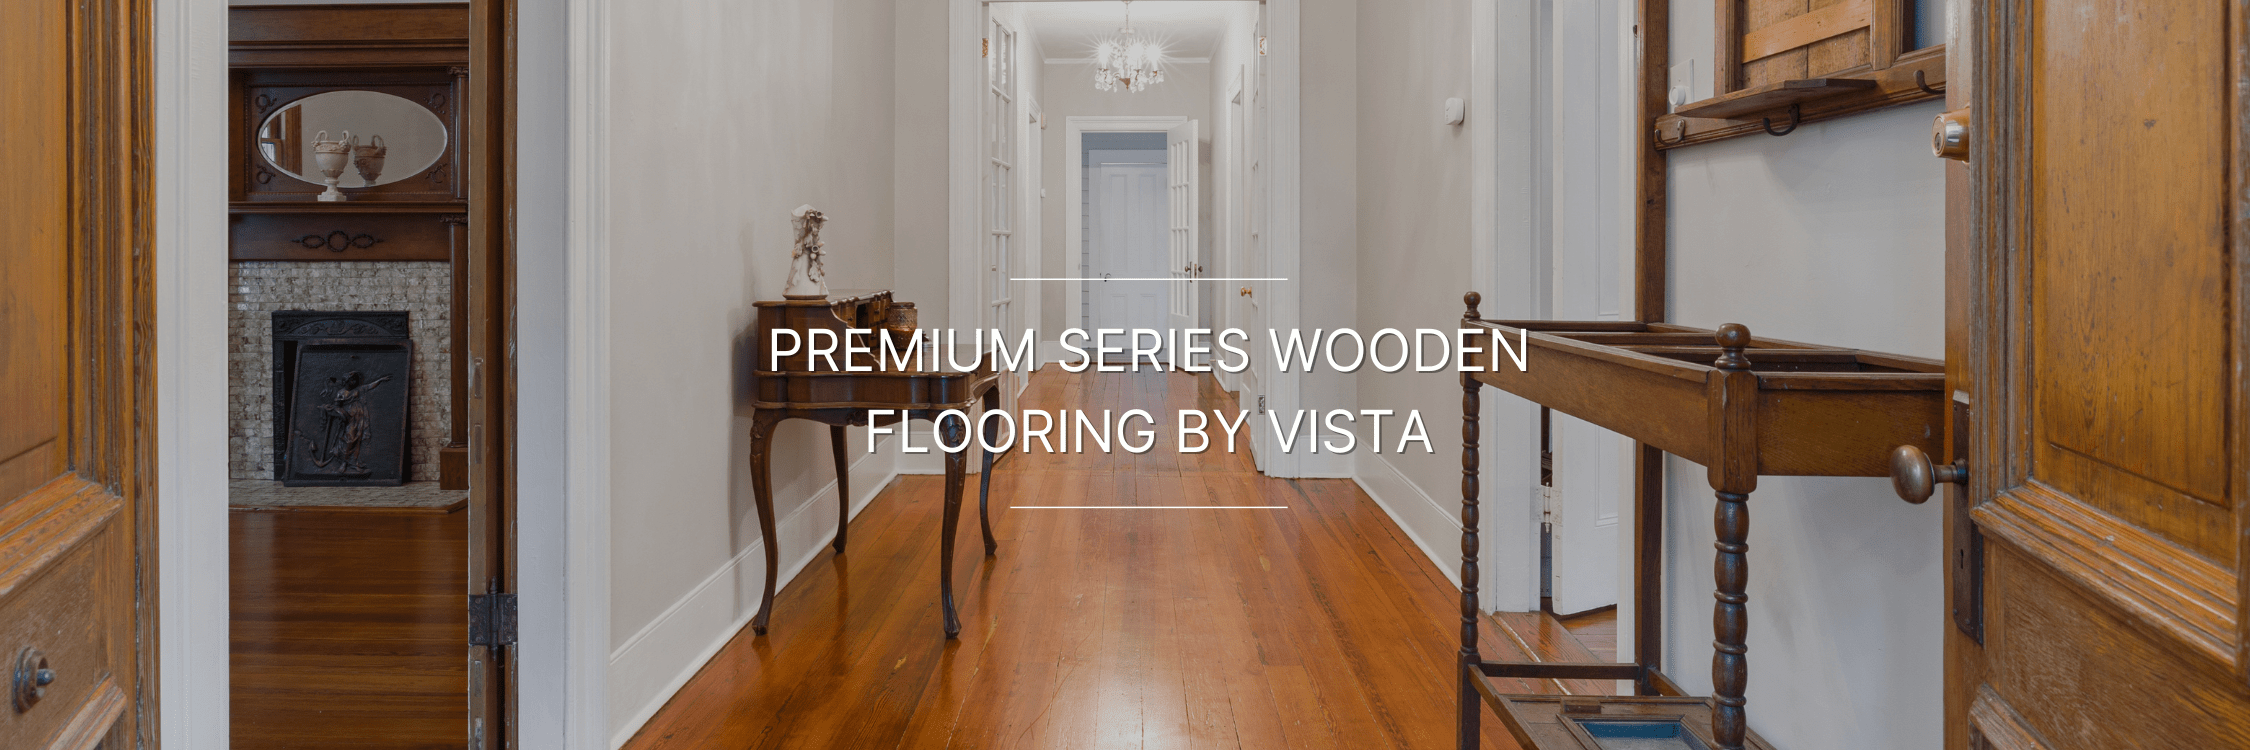 Premium Series Wooden Flooring by Vista